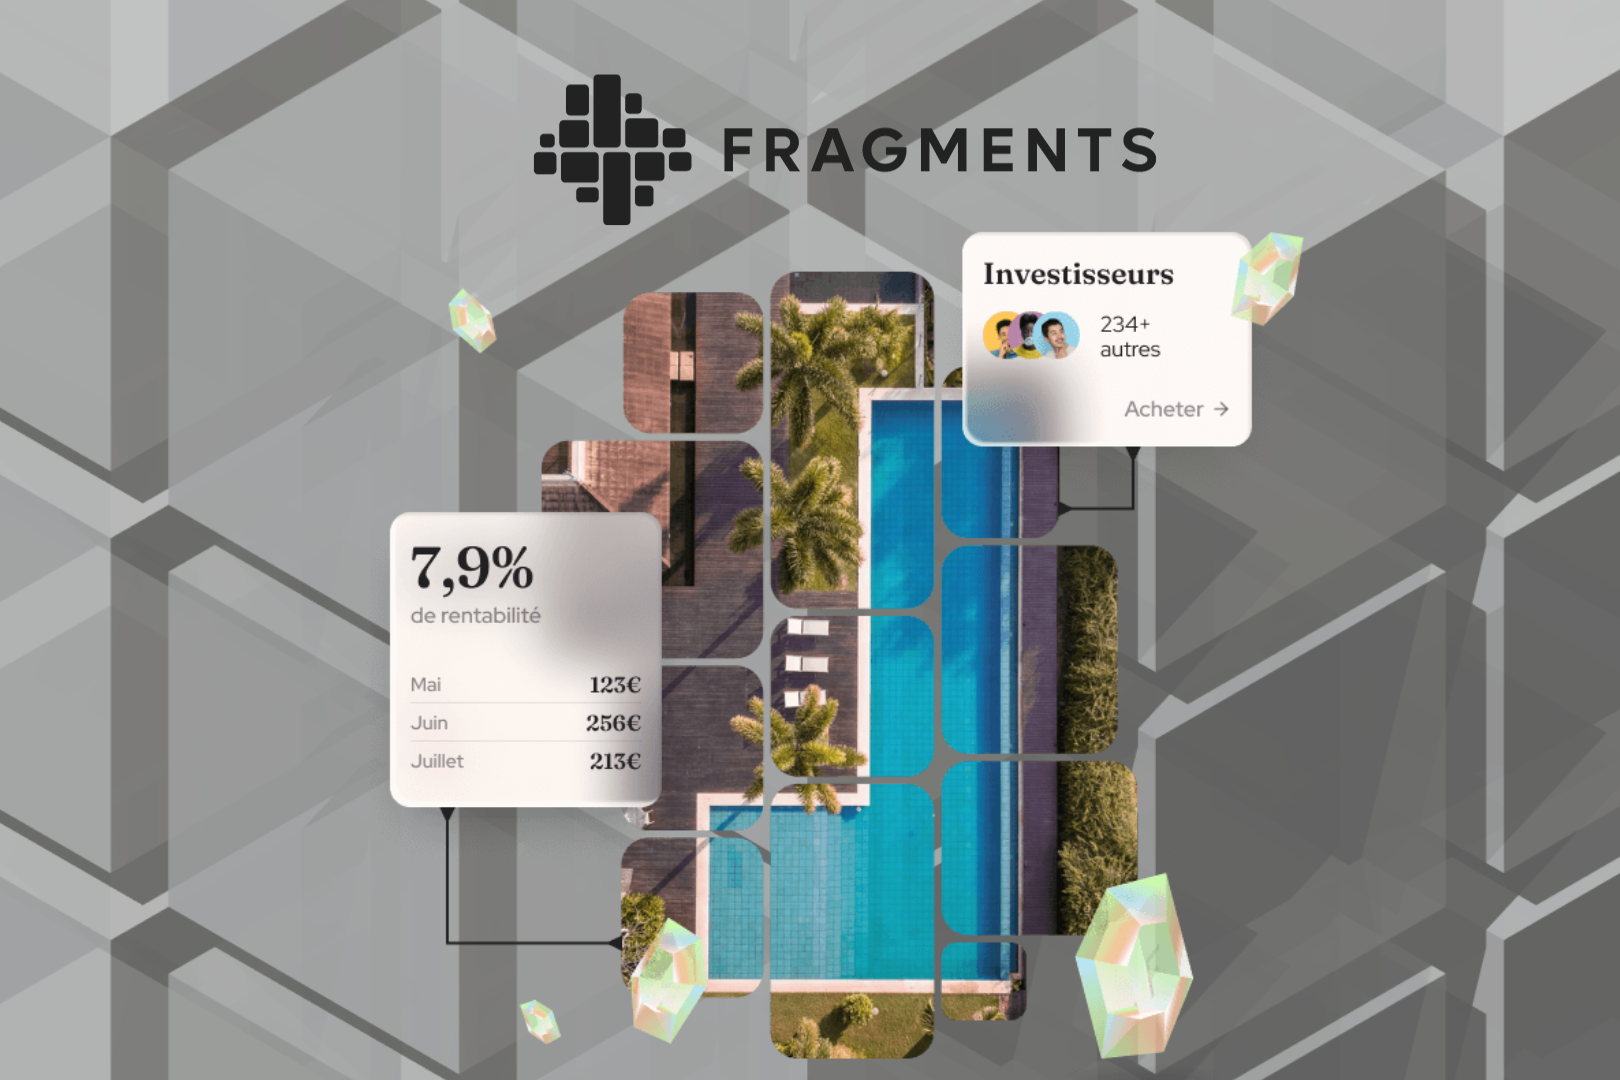 Fragments, La Solution De Prello Pour Démocratiser L’accès à L’investissement Immobilier